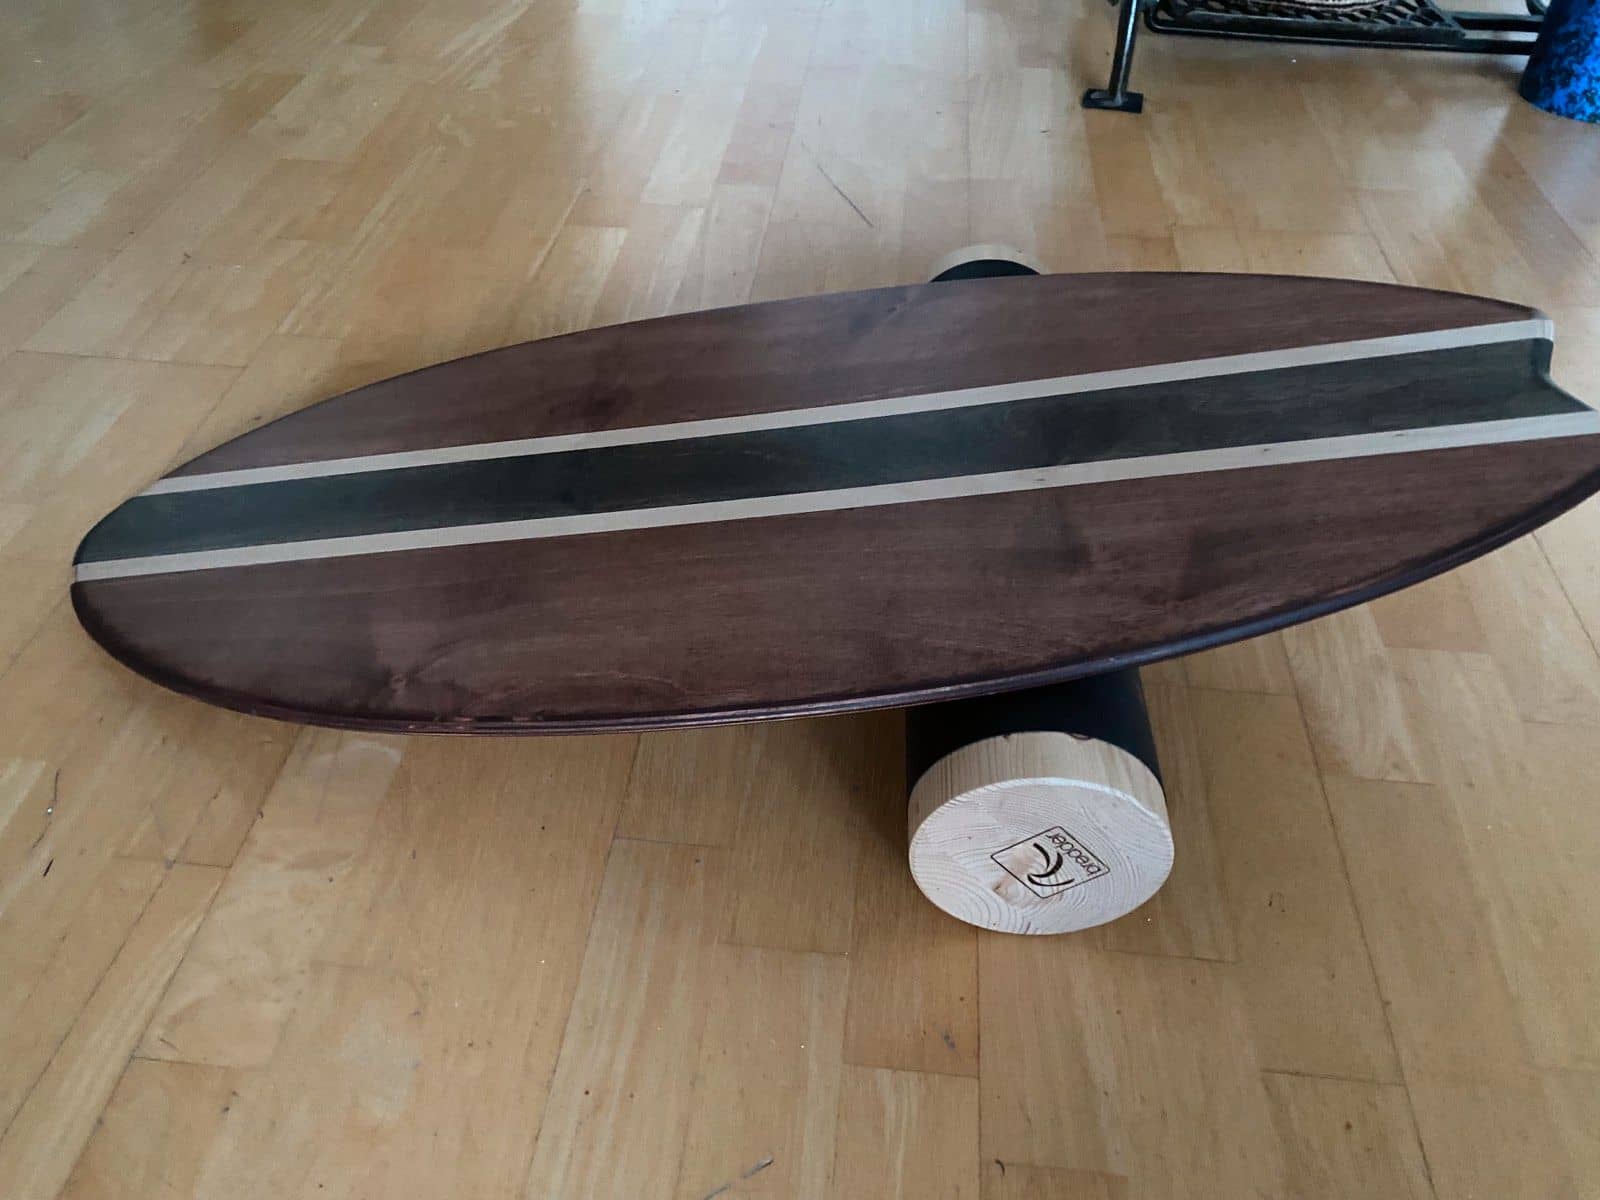 Surf Balance Boards - Surfen trainieren mit den besten Balance Boards aus Tests & Erfahrungen